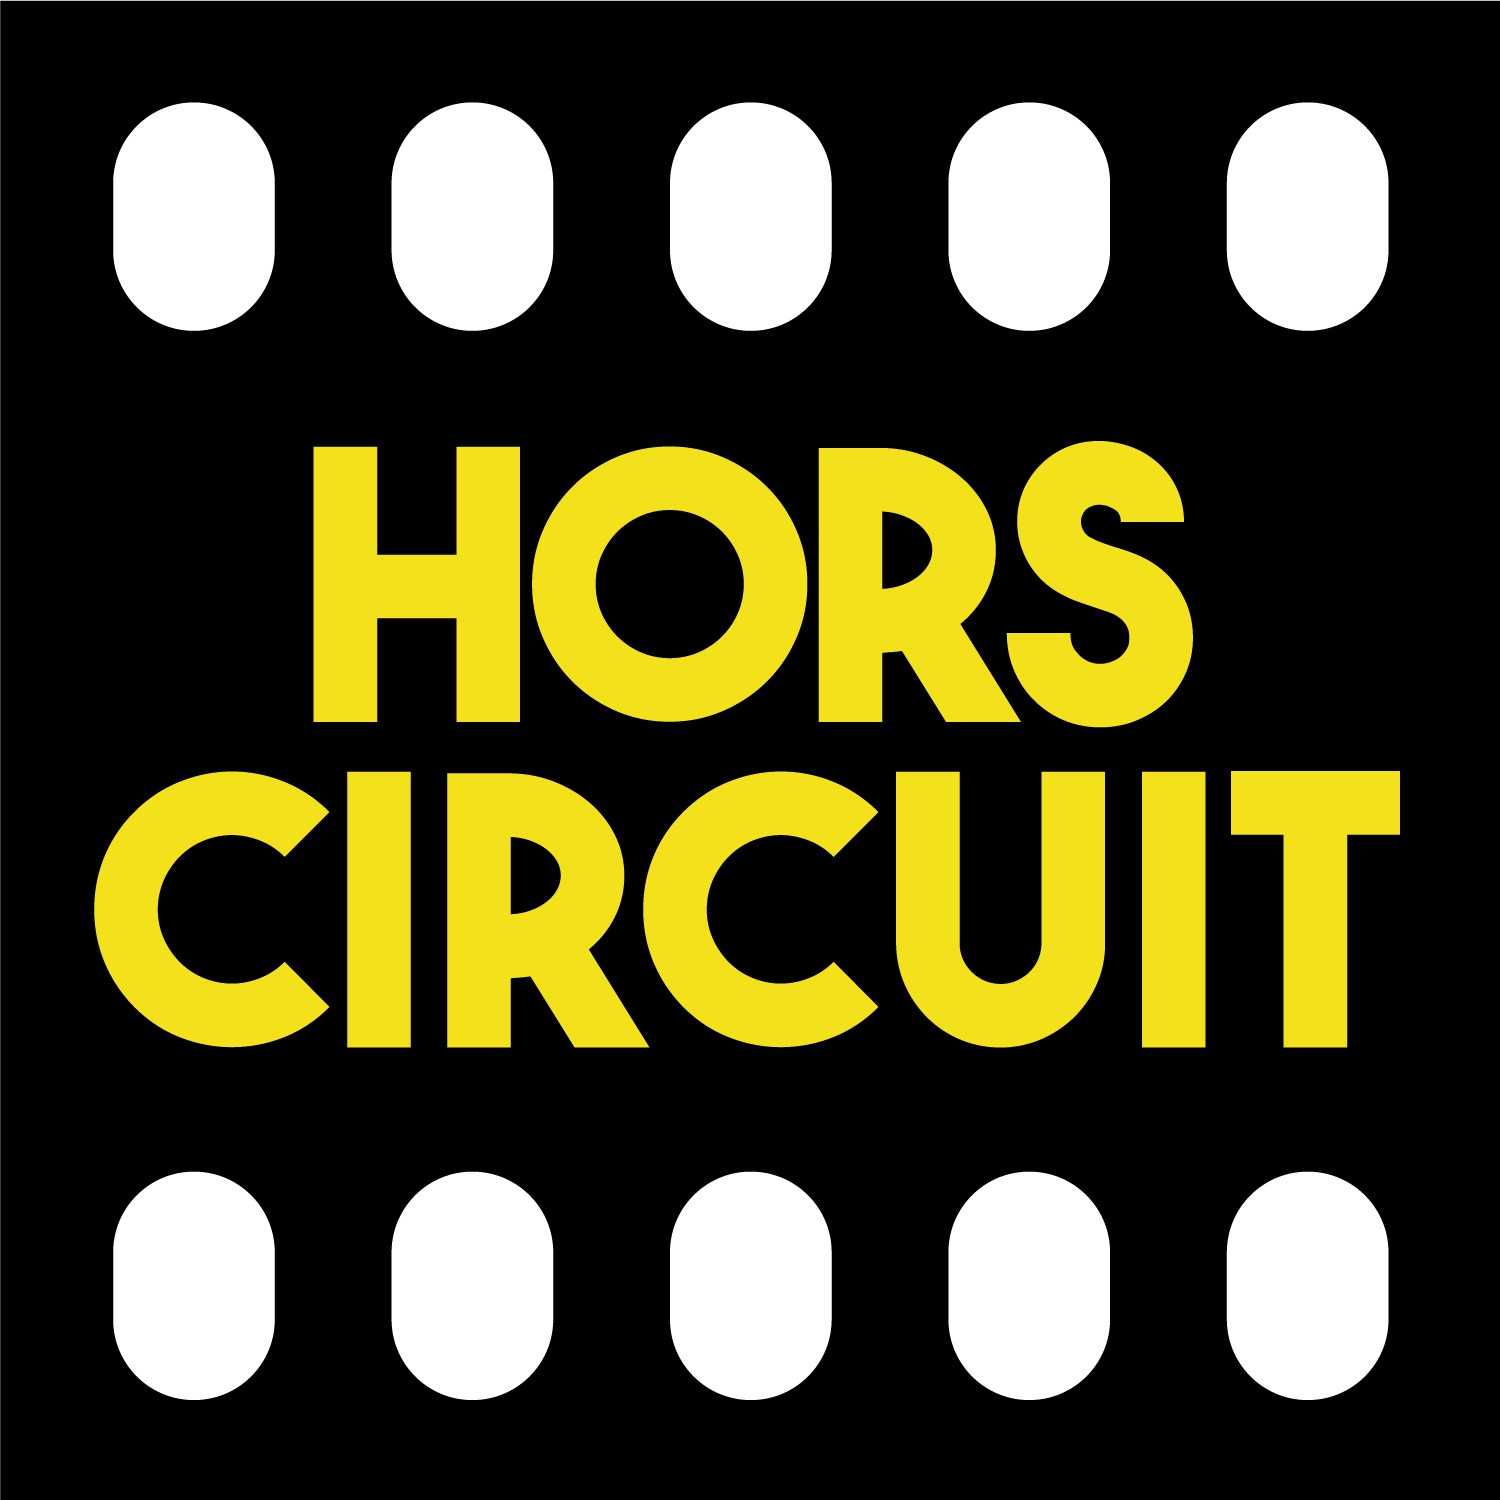 Hors Circuit